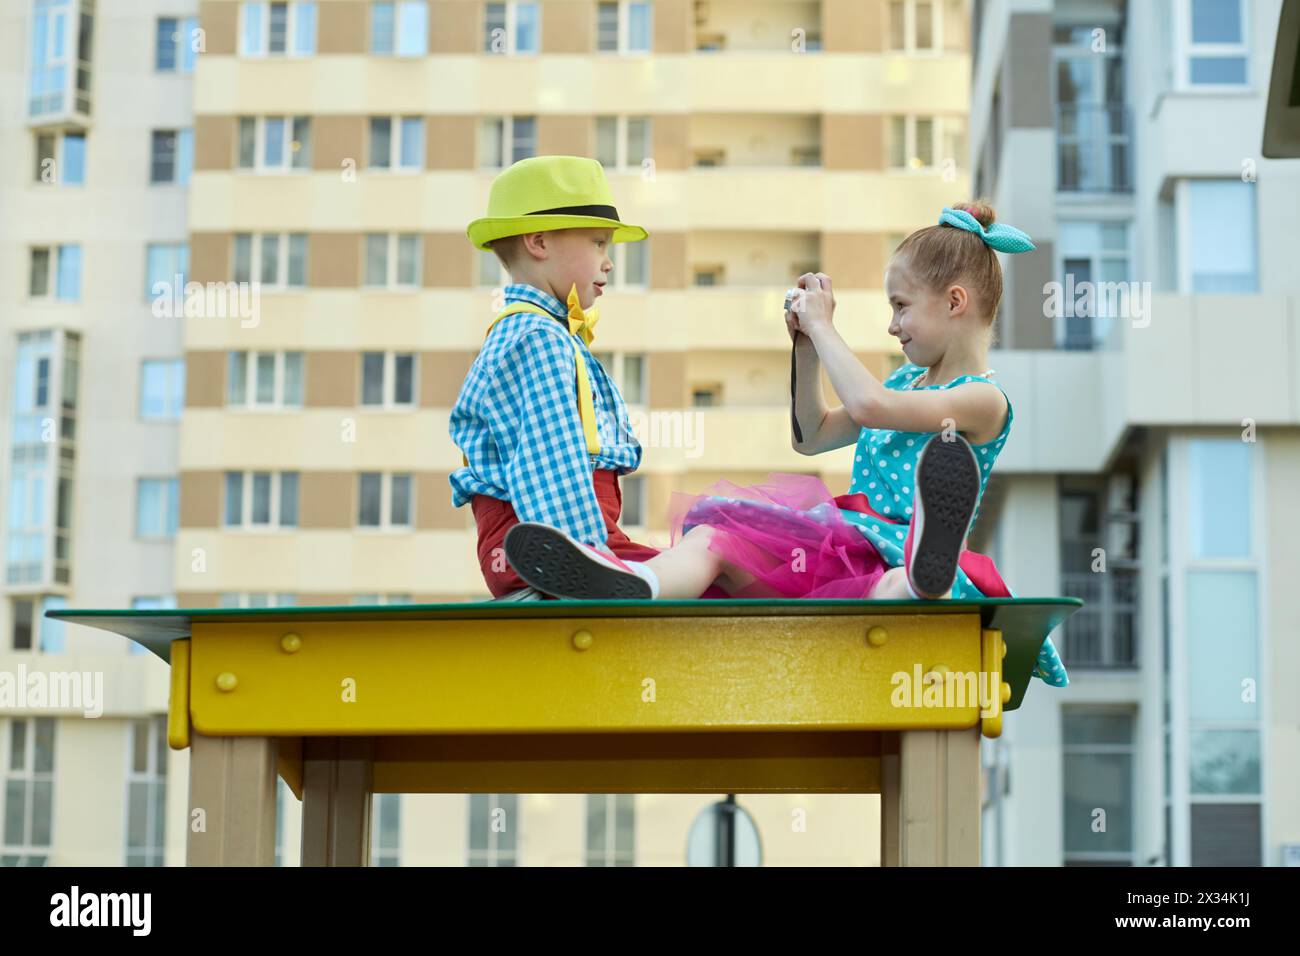 Das kleine Mädchen fotografiert den kleinen Jungen, der auf einem Holzdach auf dem Spielplatz sitzt. Stockfoto